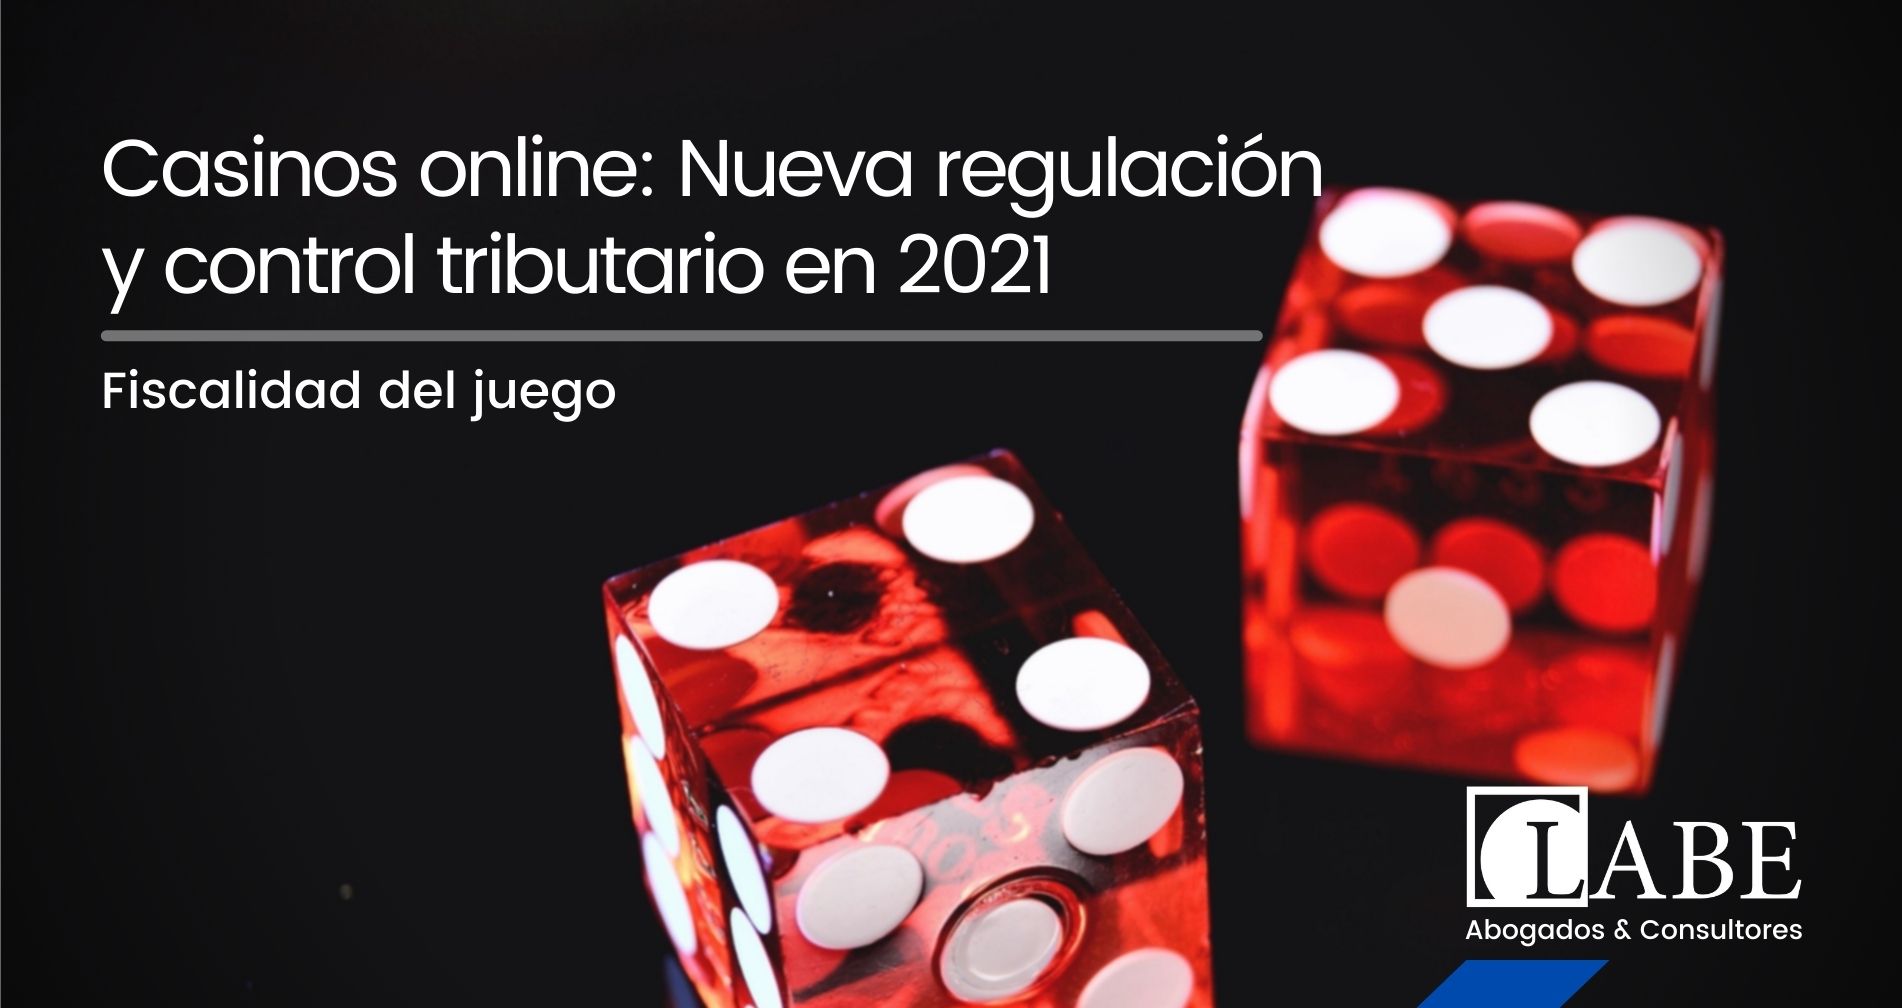 Casinos online: Nueva regulación y control tributario en 2021